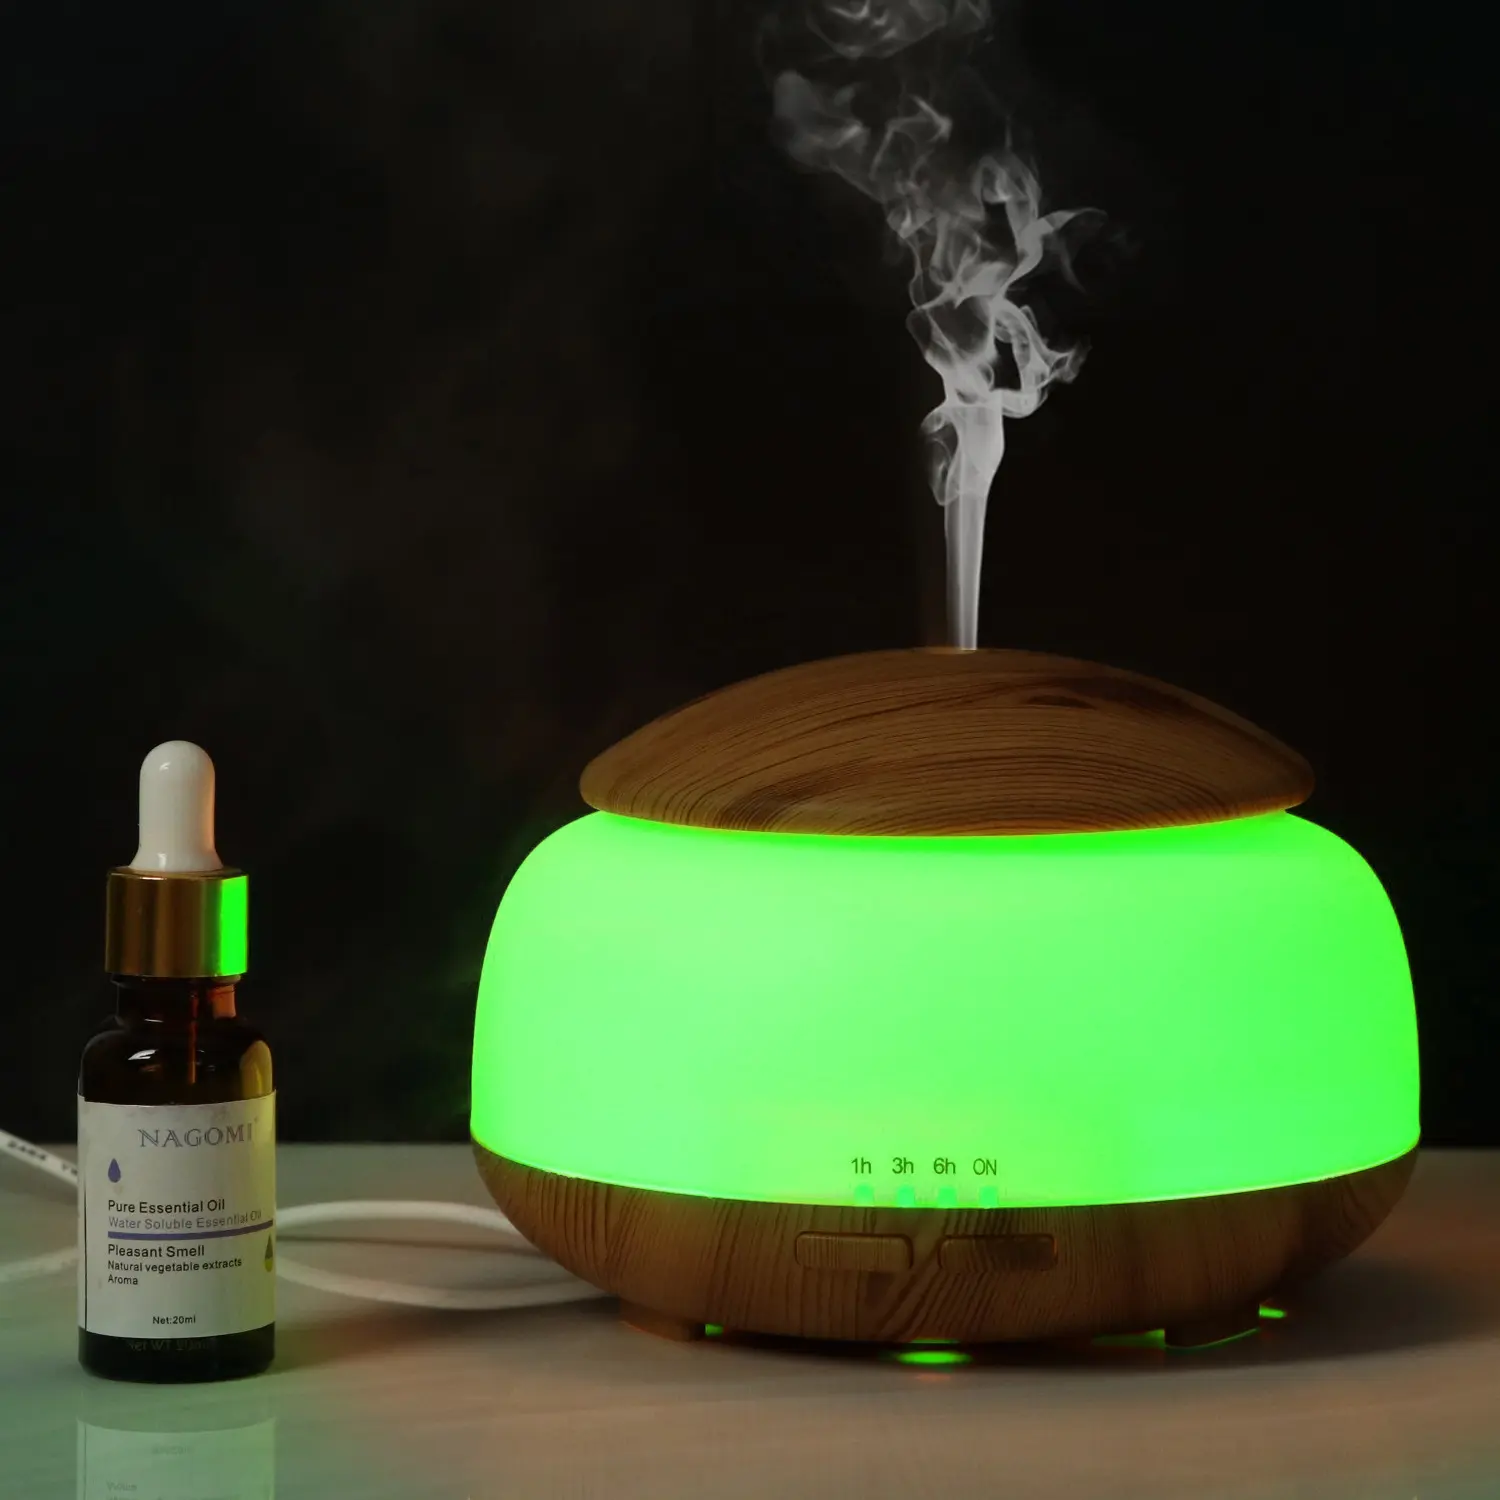 Párásító, aroma diffúzor készülék 300ml világosbarna színben (YX-300-LIGHT-WOOD) ultrahangos